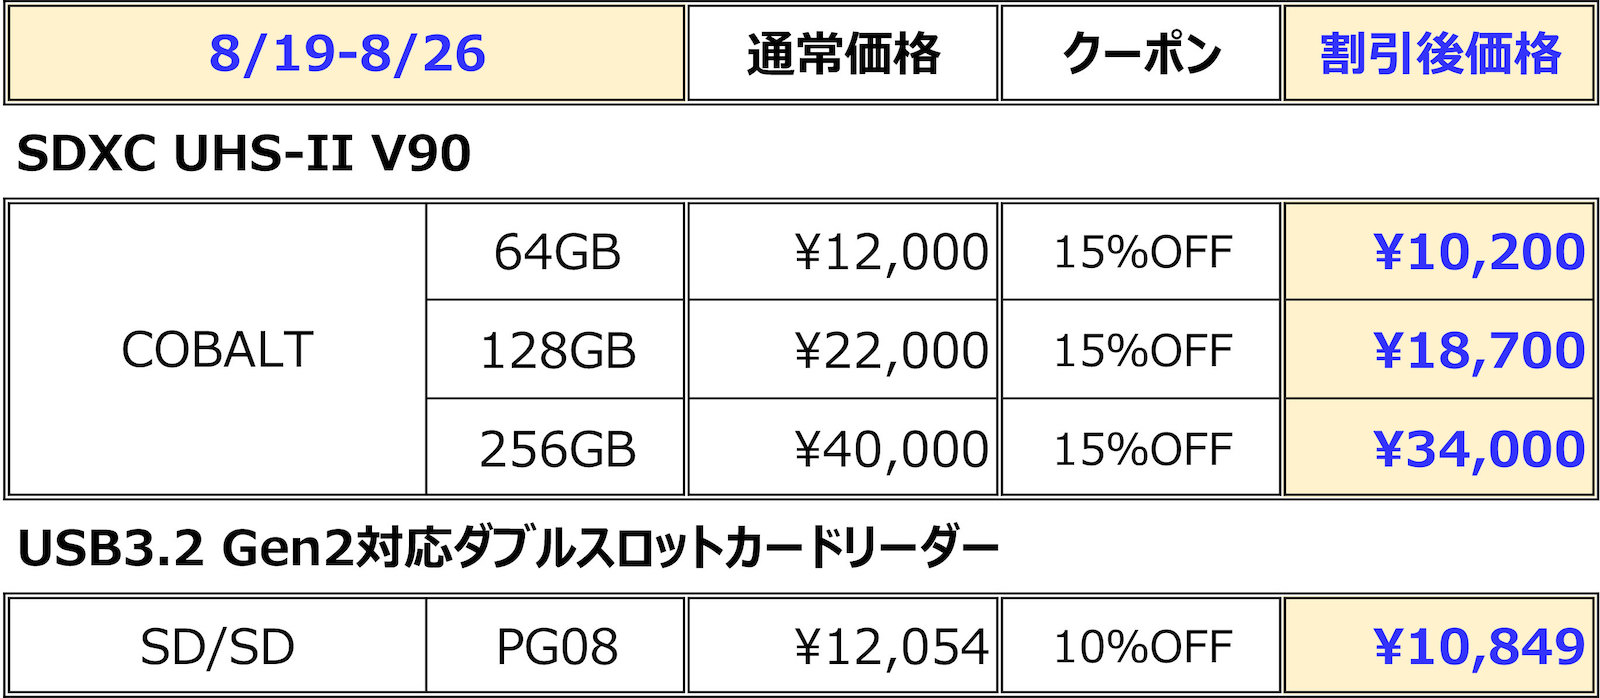 ProGrade SD Cards Sale 2